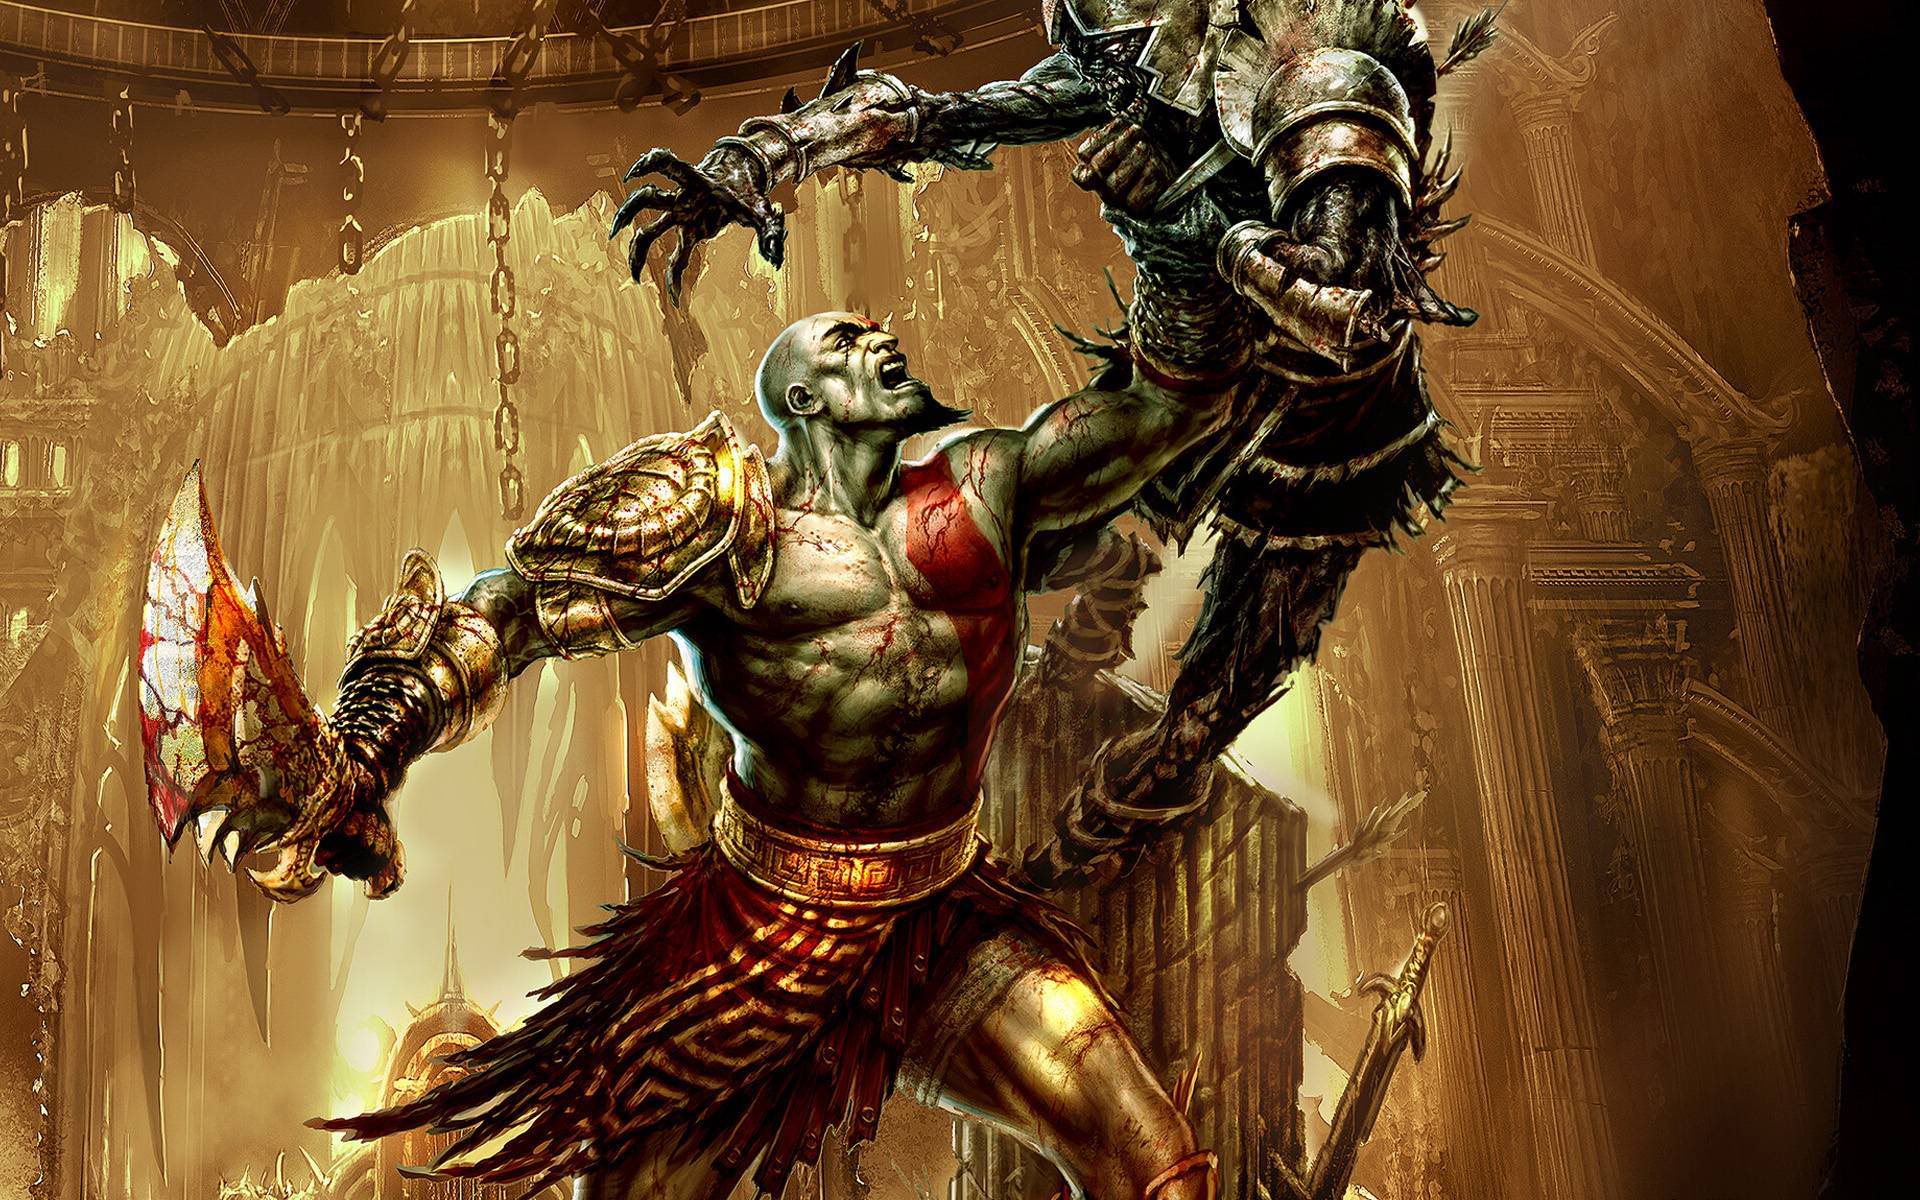 God of War Kratos Wallpapers